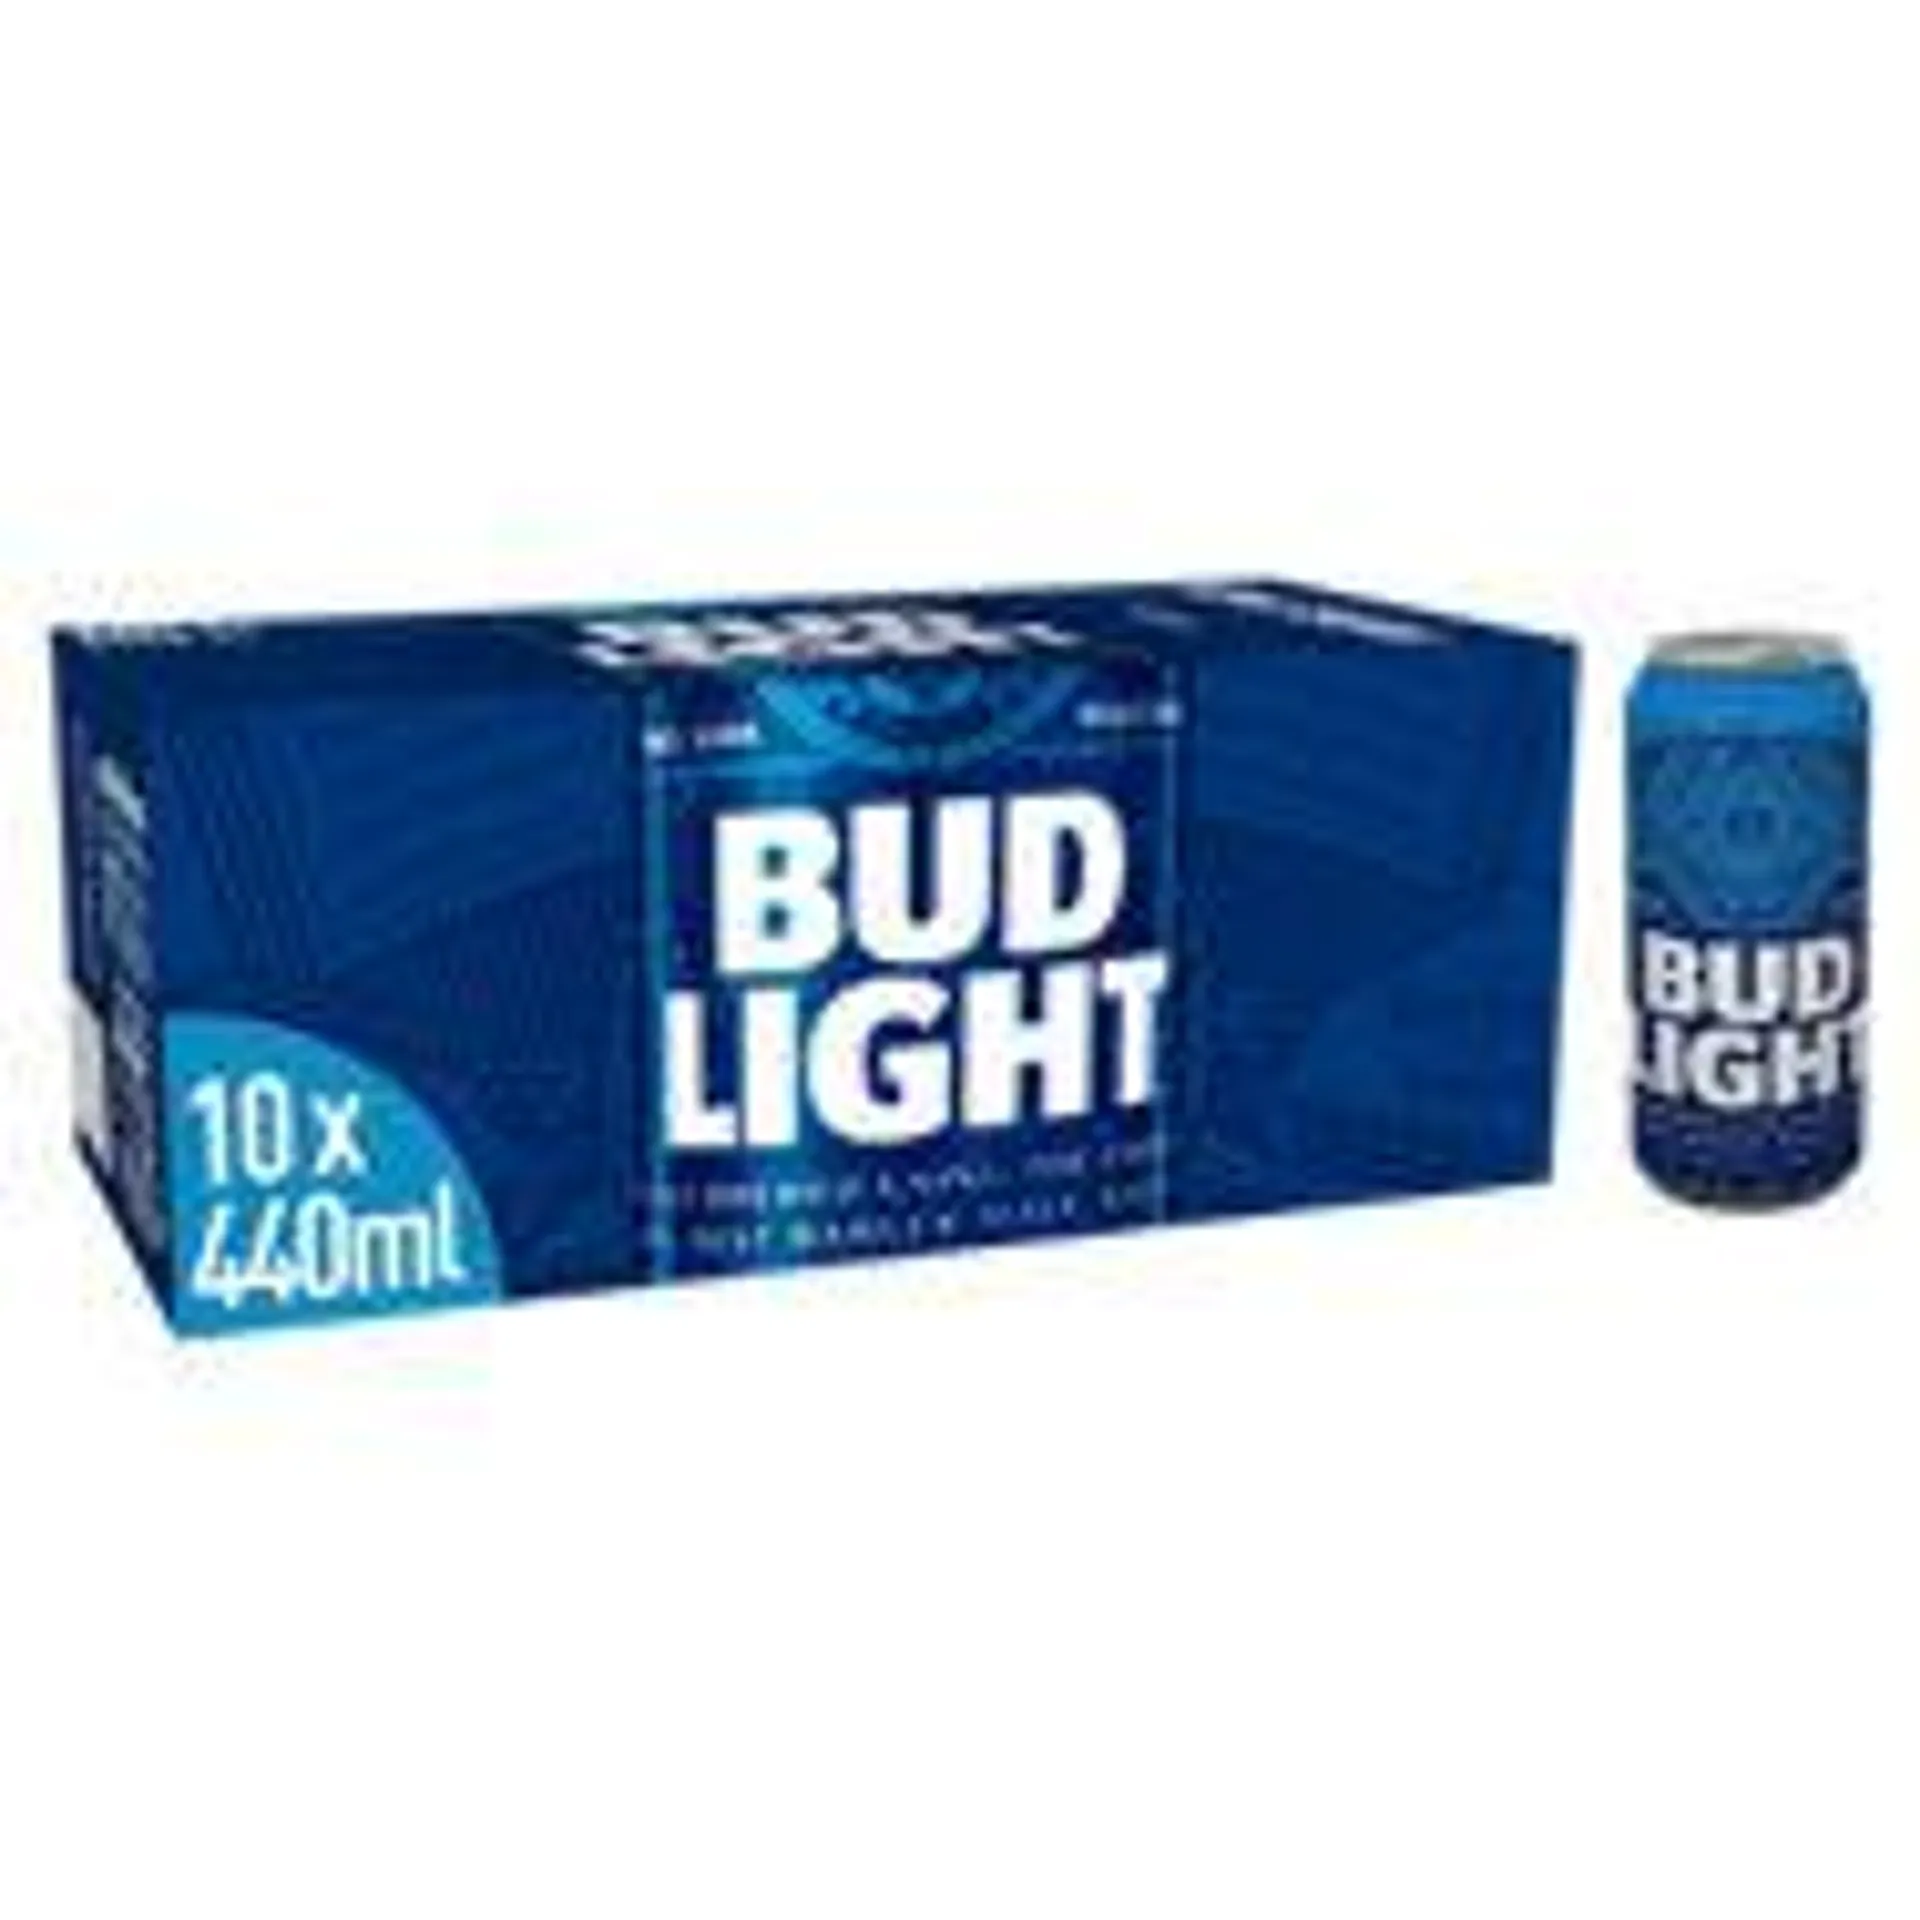 Bud Light Lager Beer Cans Fridge Pack